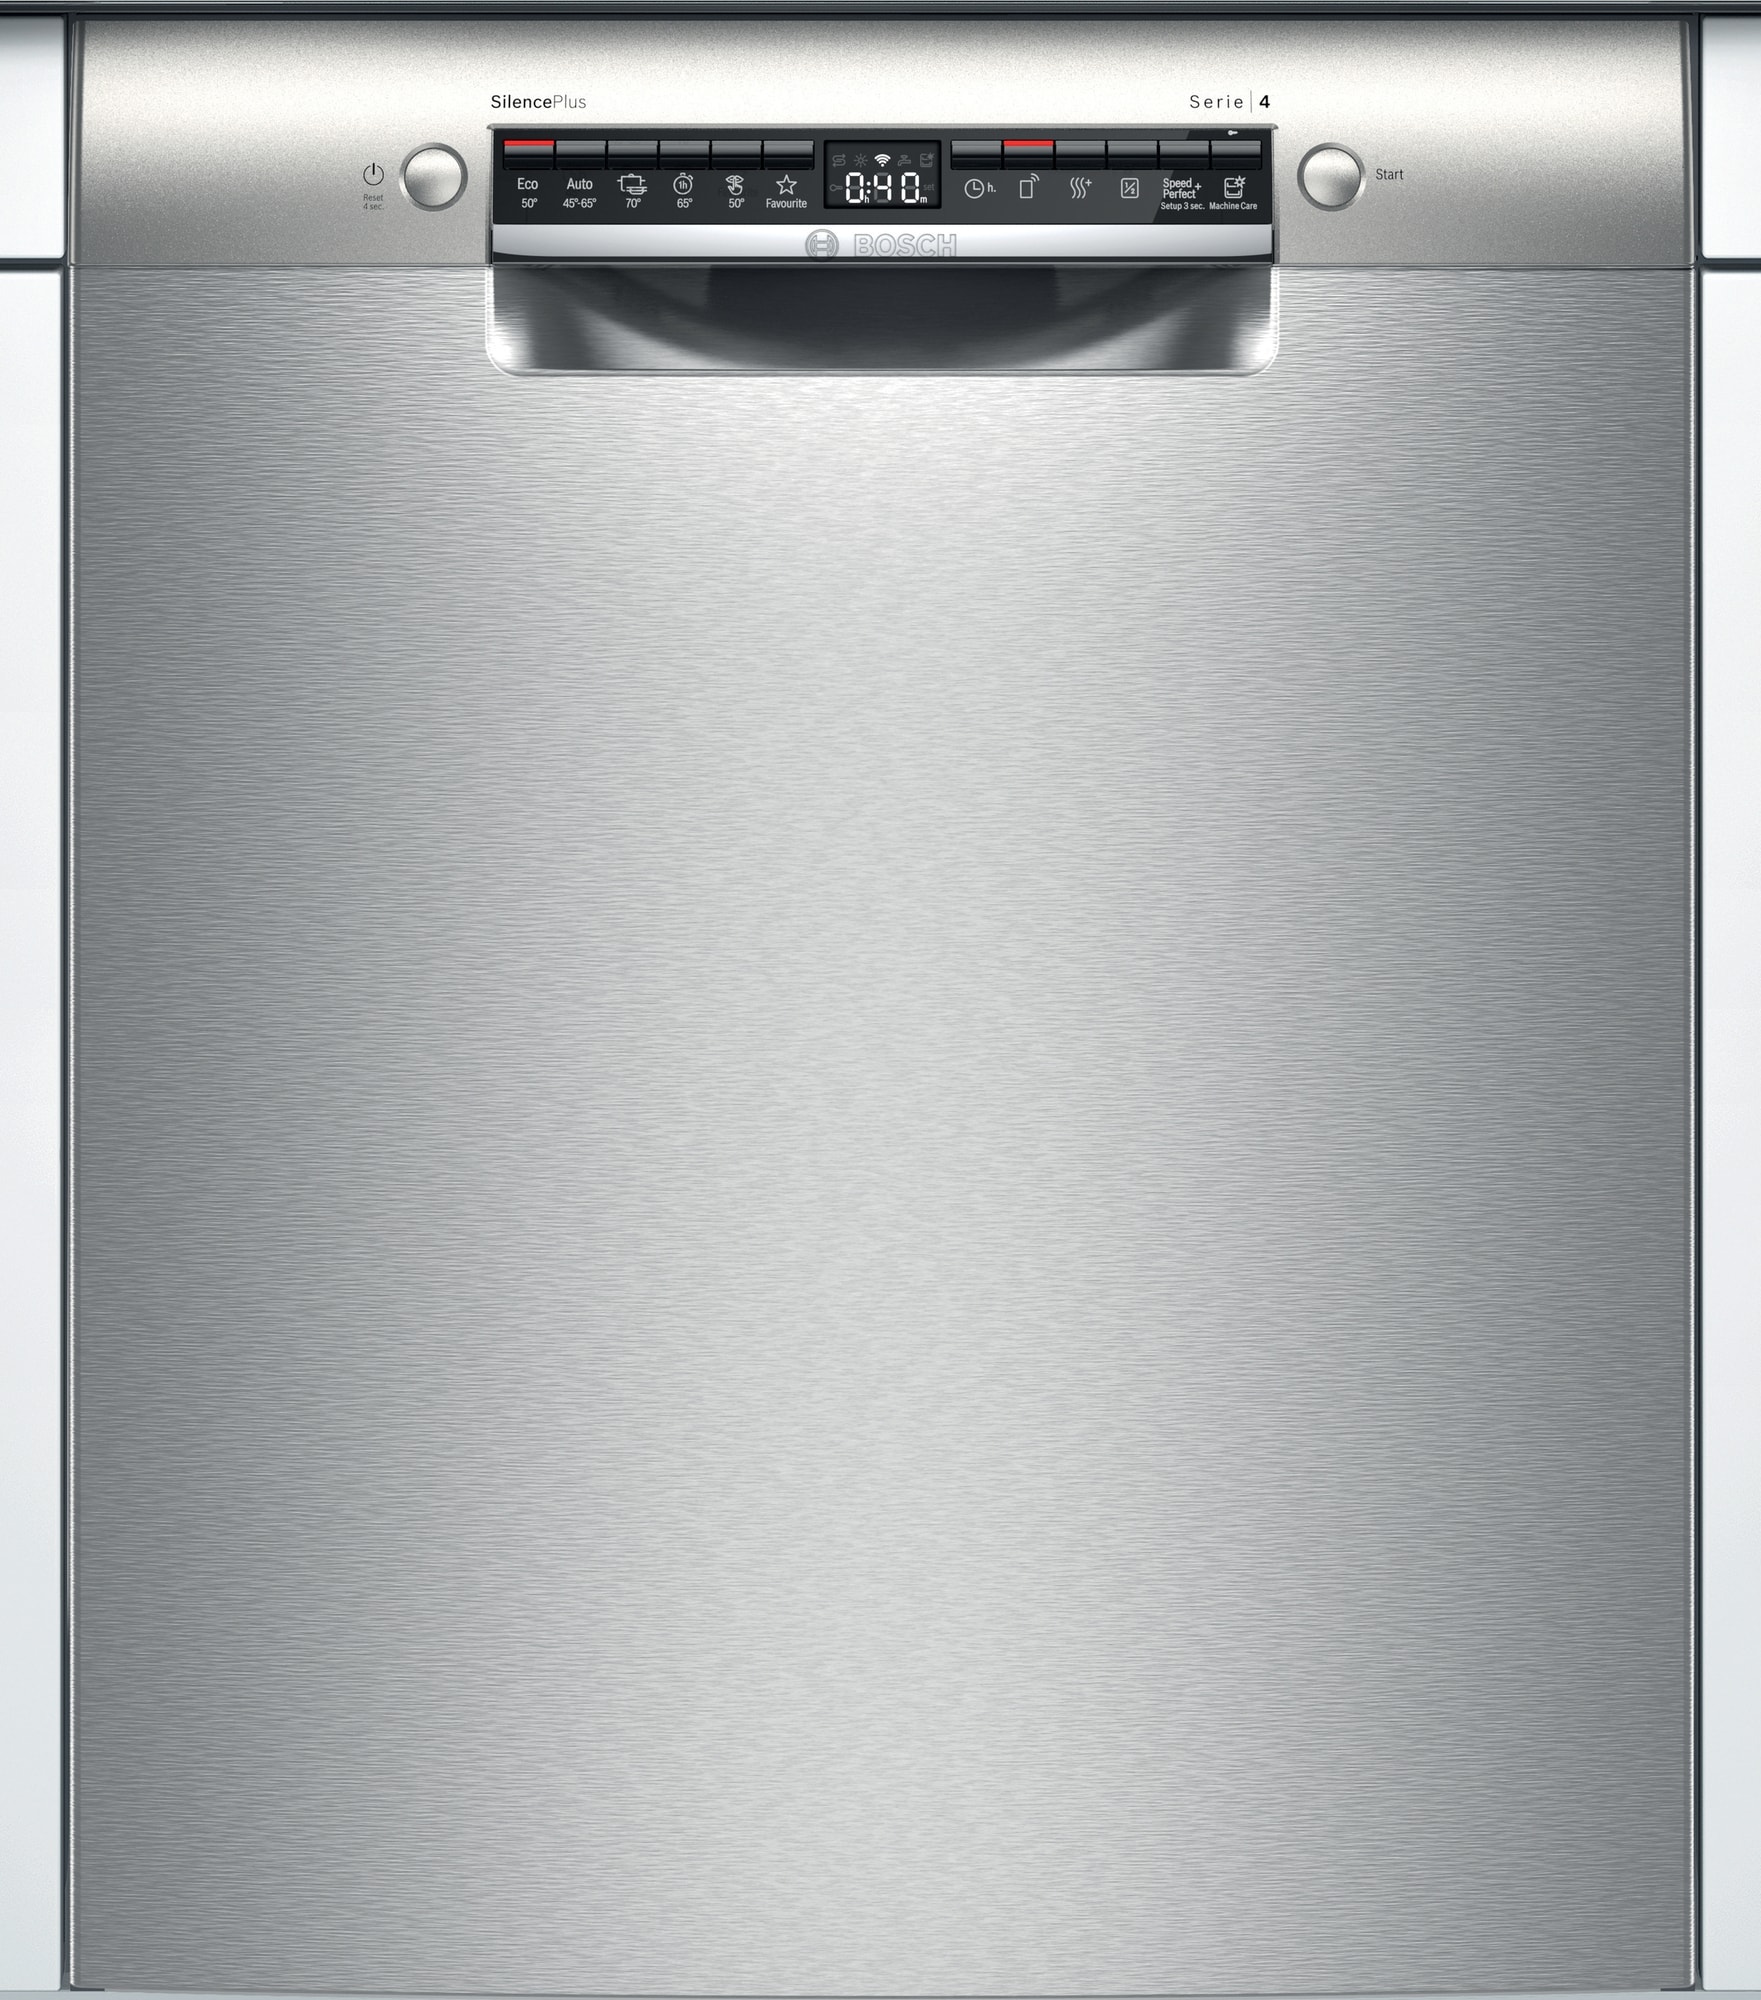 Køb Rustfrit Opvaskemaskine online til meget lav pris!